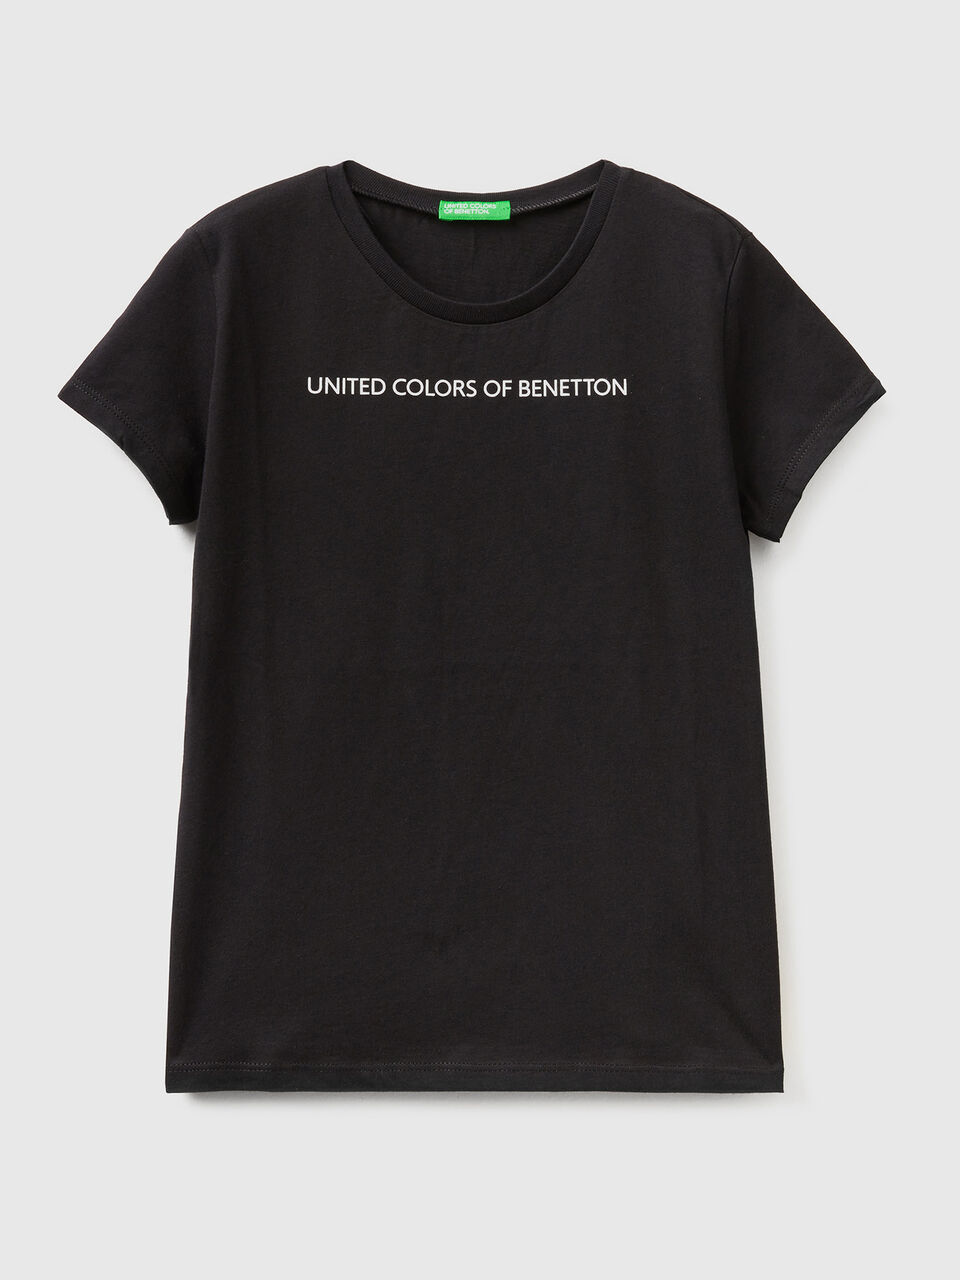 Shirt aus 100% Baumwolle | Benetton - Schwarz Logo mit